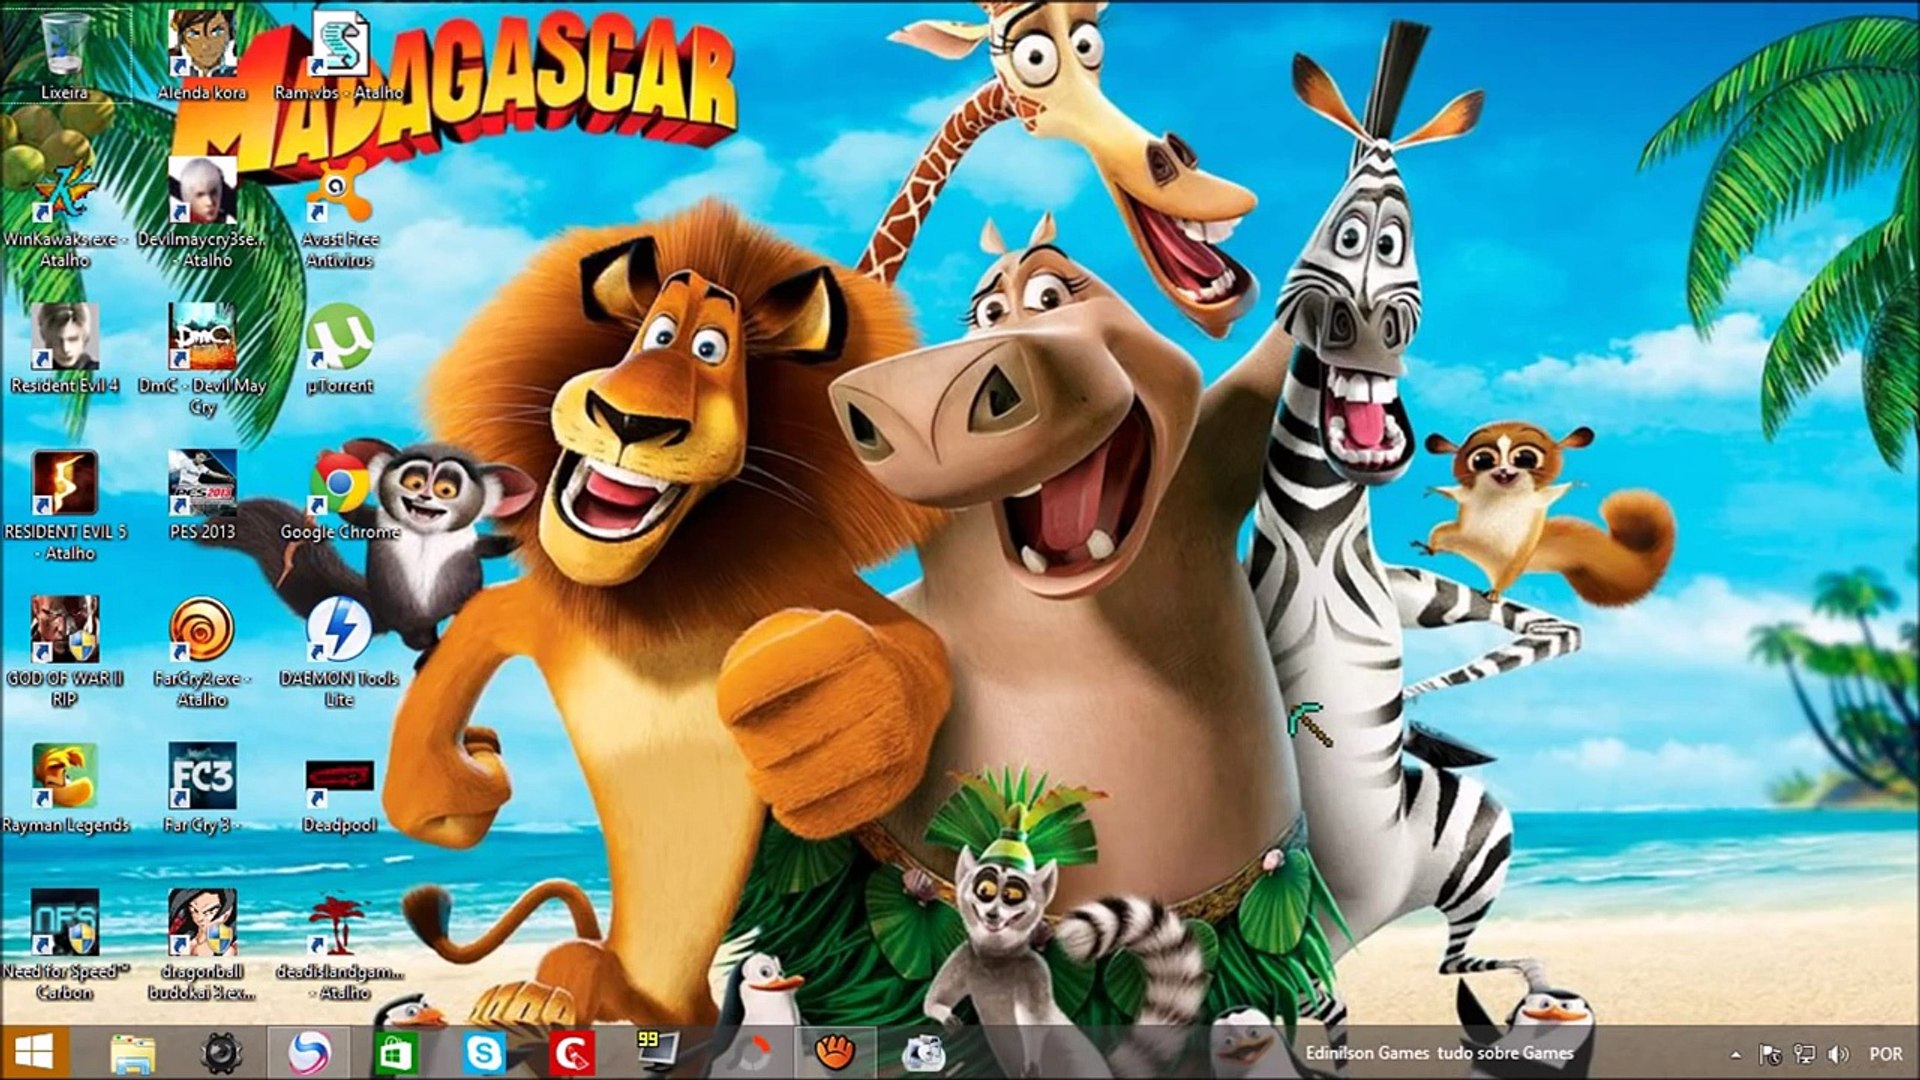 Jogo PC Madagascar 2 - Escape Africa Charneca De Caparica E